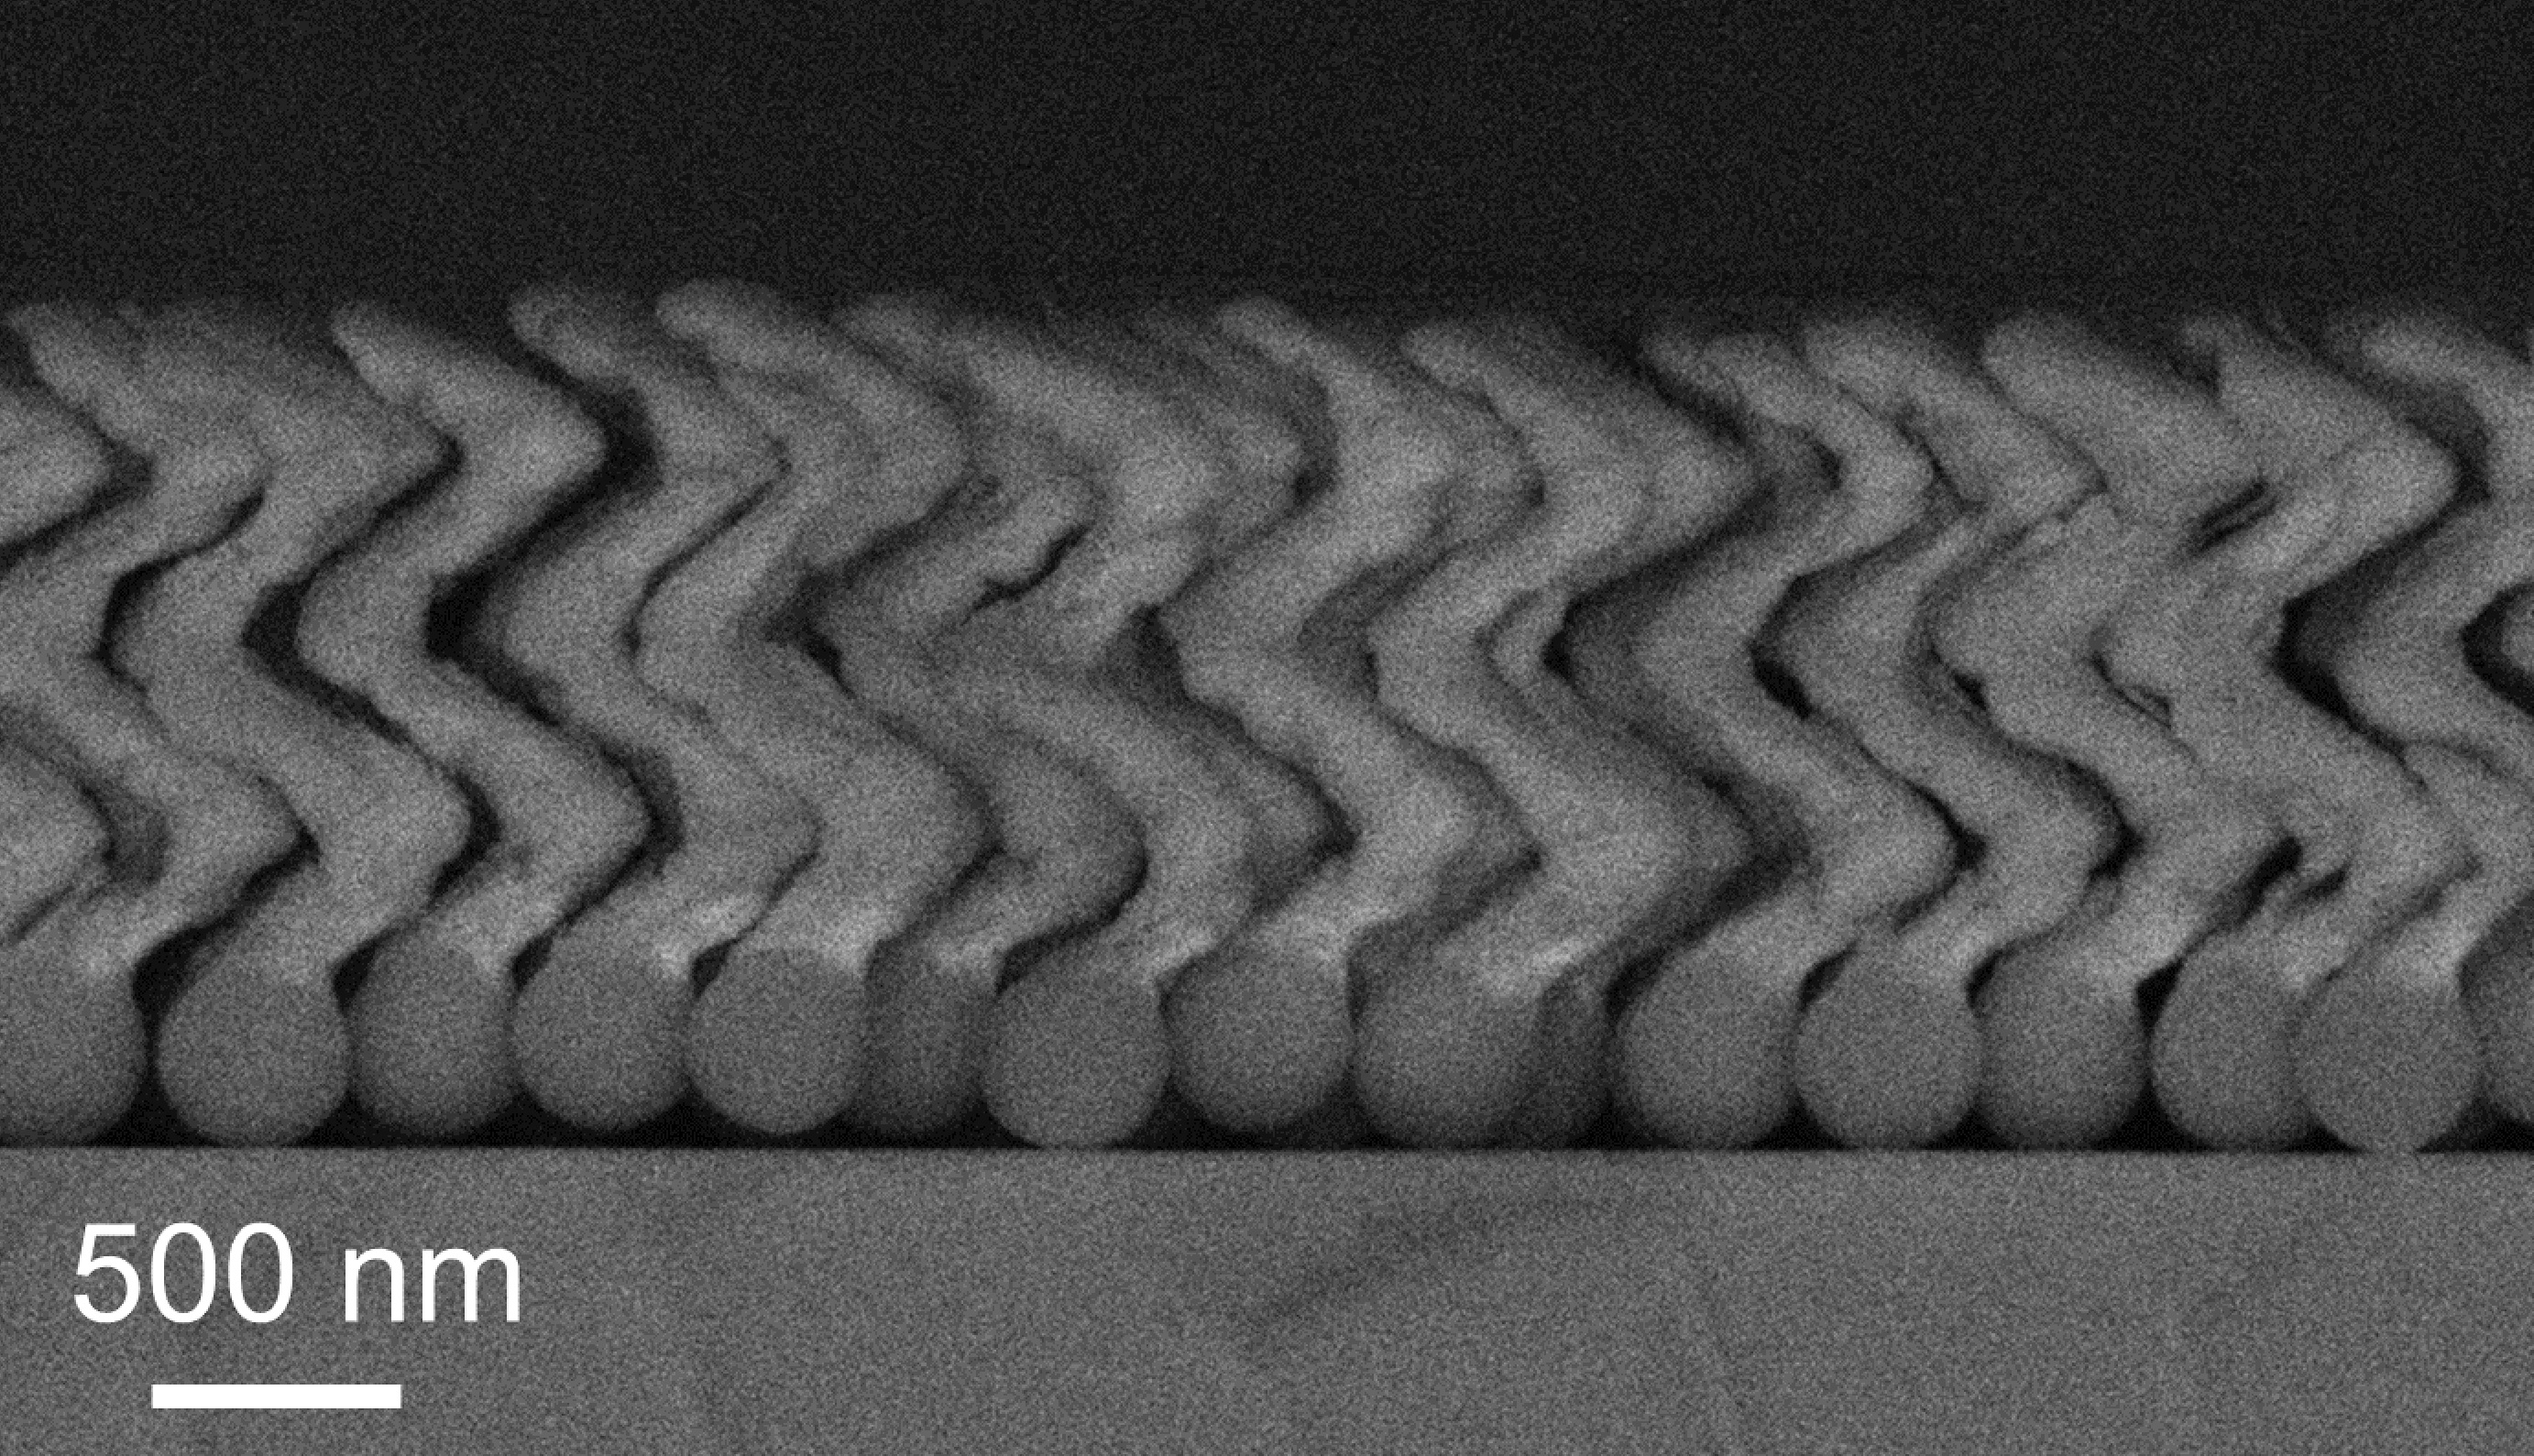 Schwarz-weiße mikroskopische Aufnahme der Nanopropeller